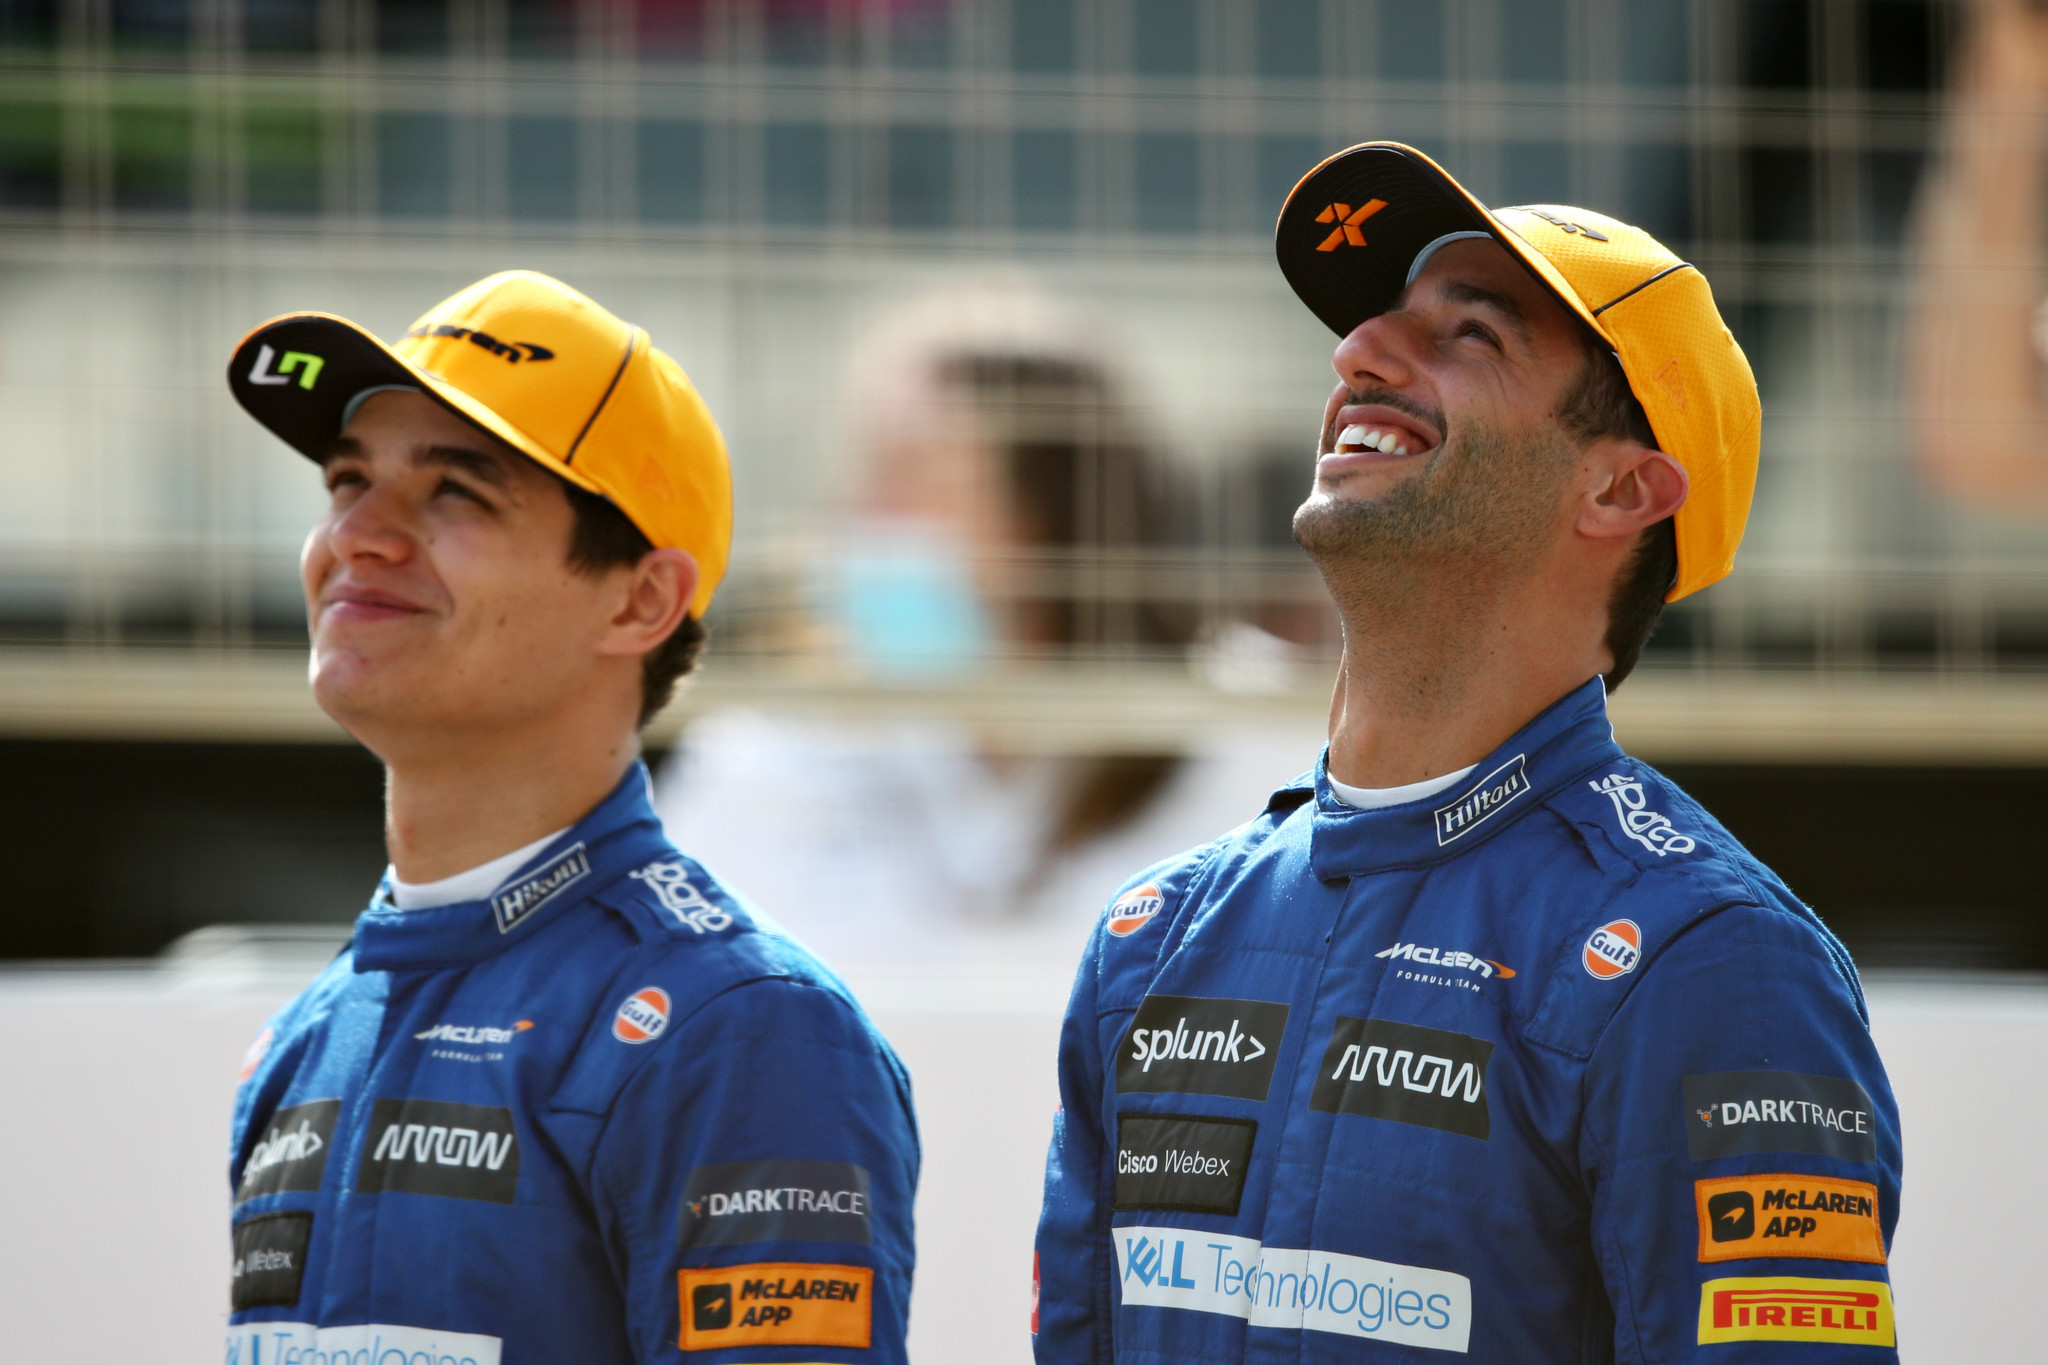 Daniel Ricciardo, à droite, est un nouvel ajout à l'équipe McLaren pour 2021, aux côtés de Lando Norris, à gauche © Getty Images